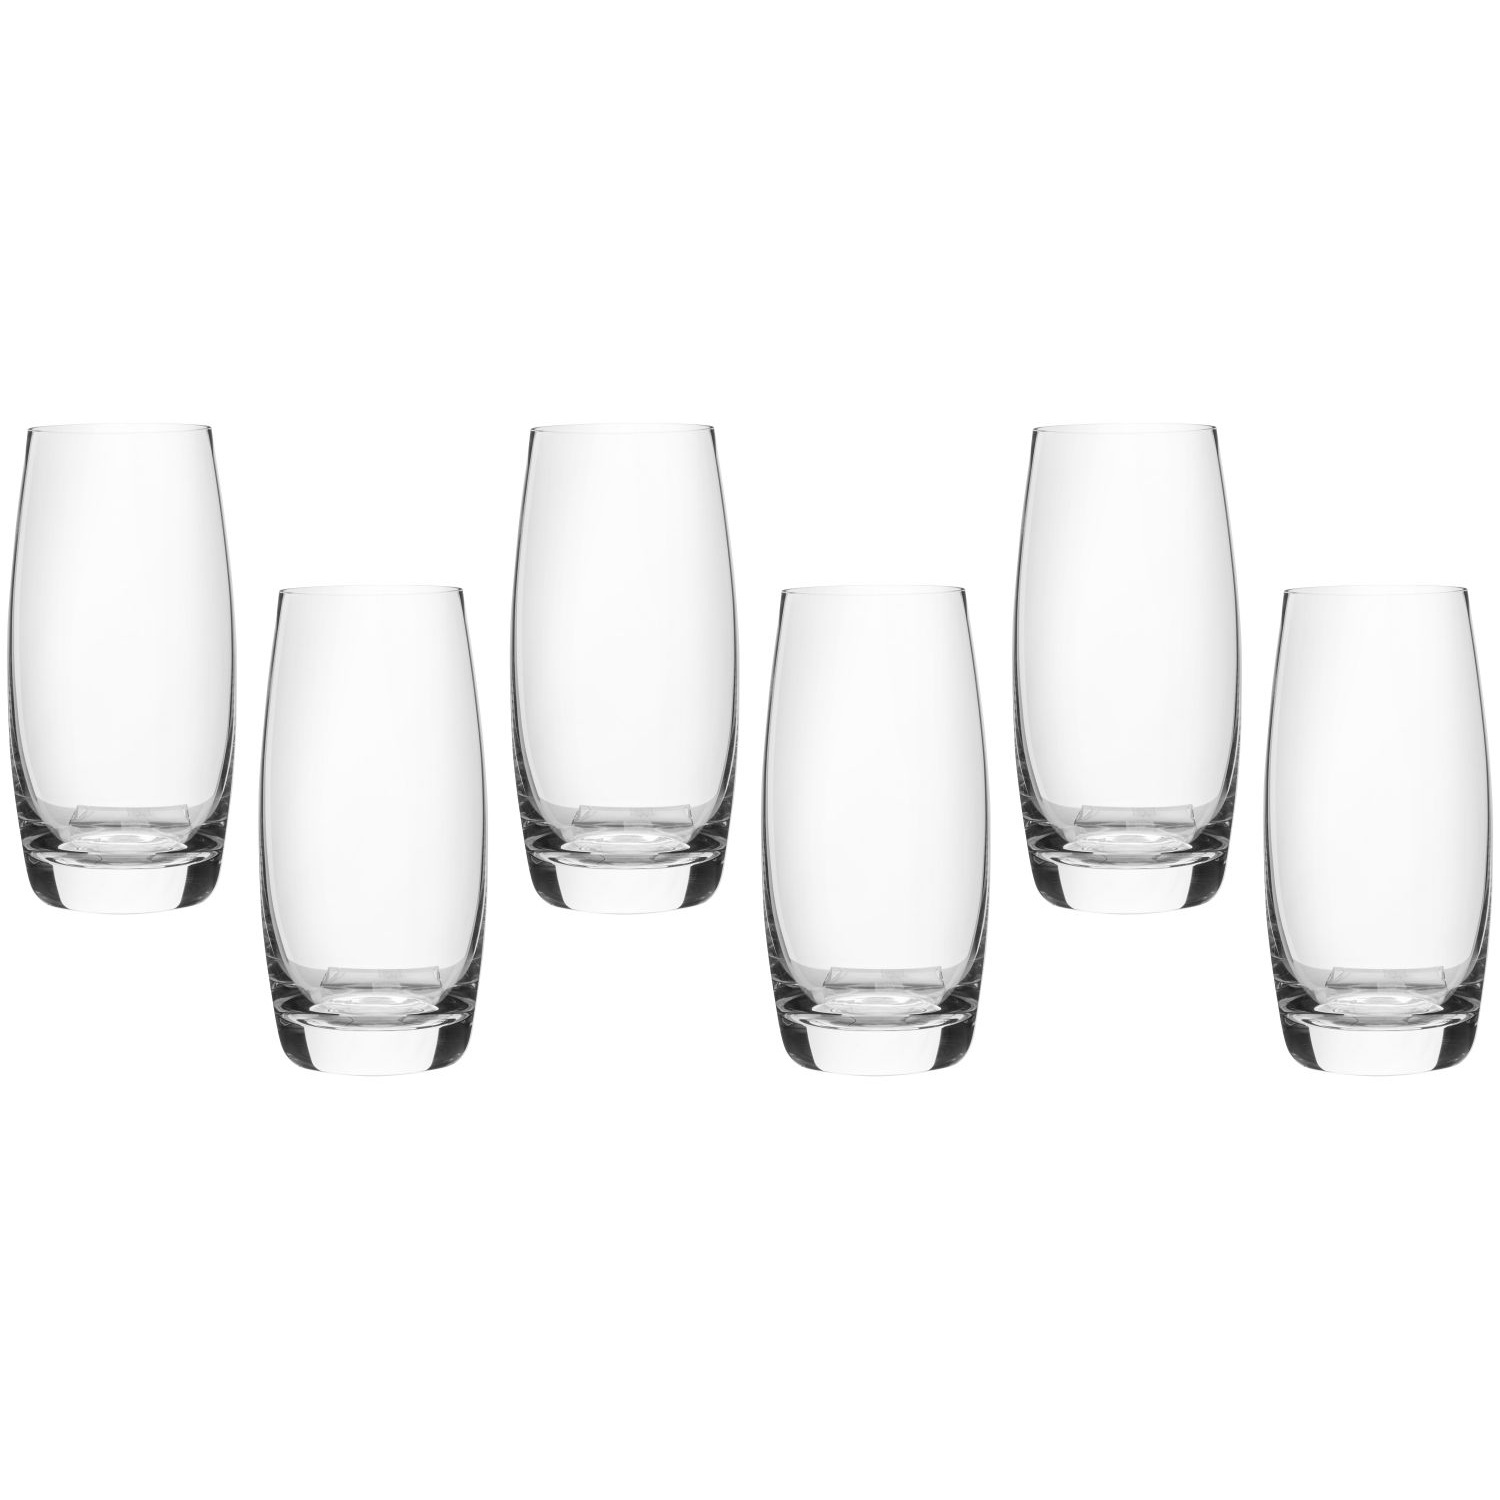 Набор стаканов Maxwell & Williams Cosmopolitan для воды 0,4 л набор стаканов низких rcr adagio 6x350 мл